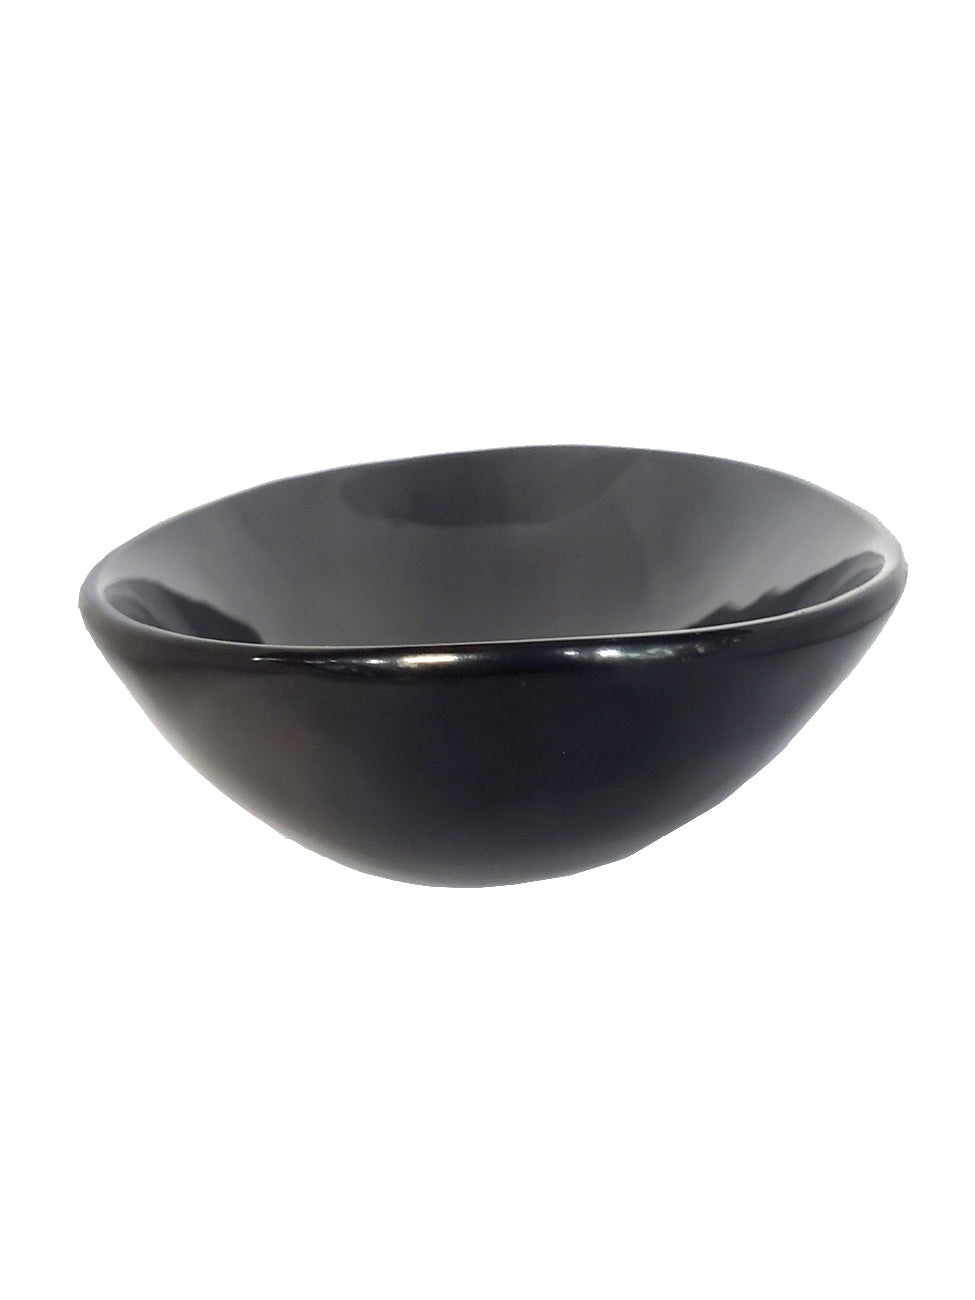 Horn Bowl - Black